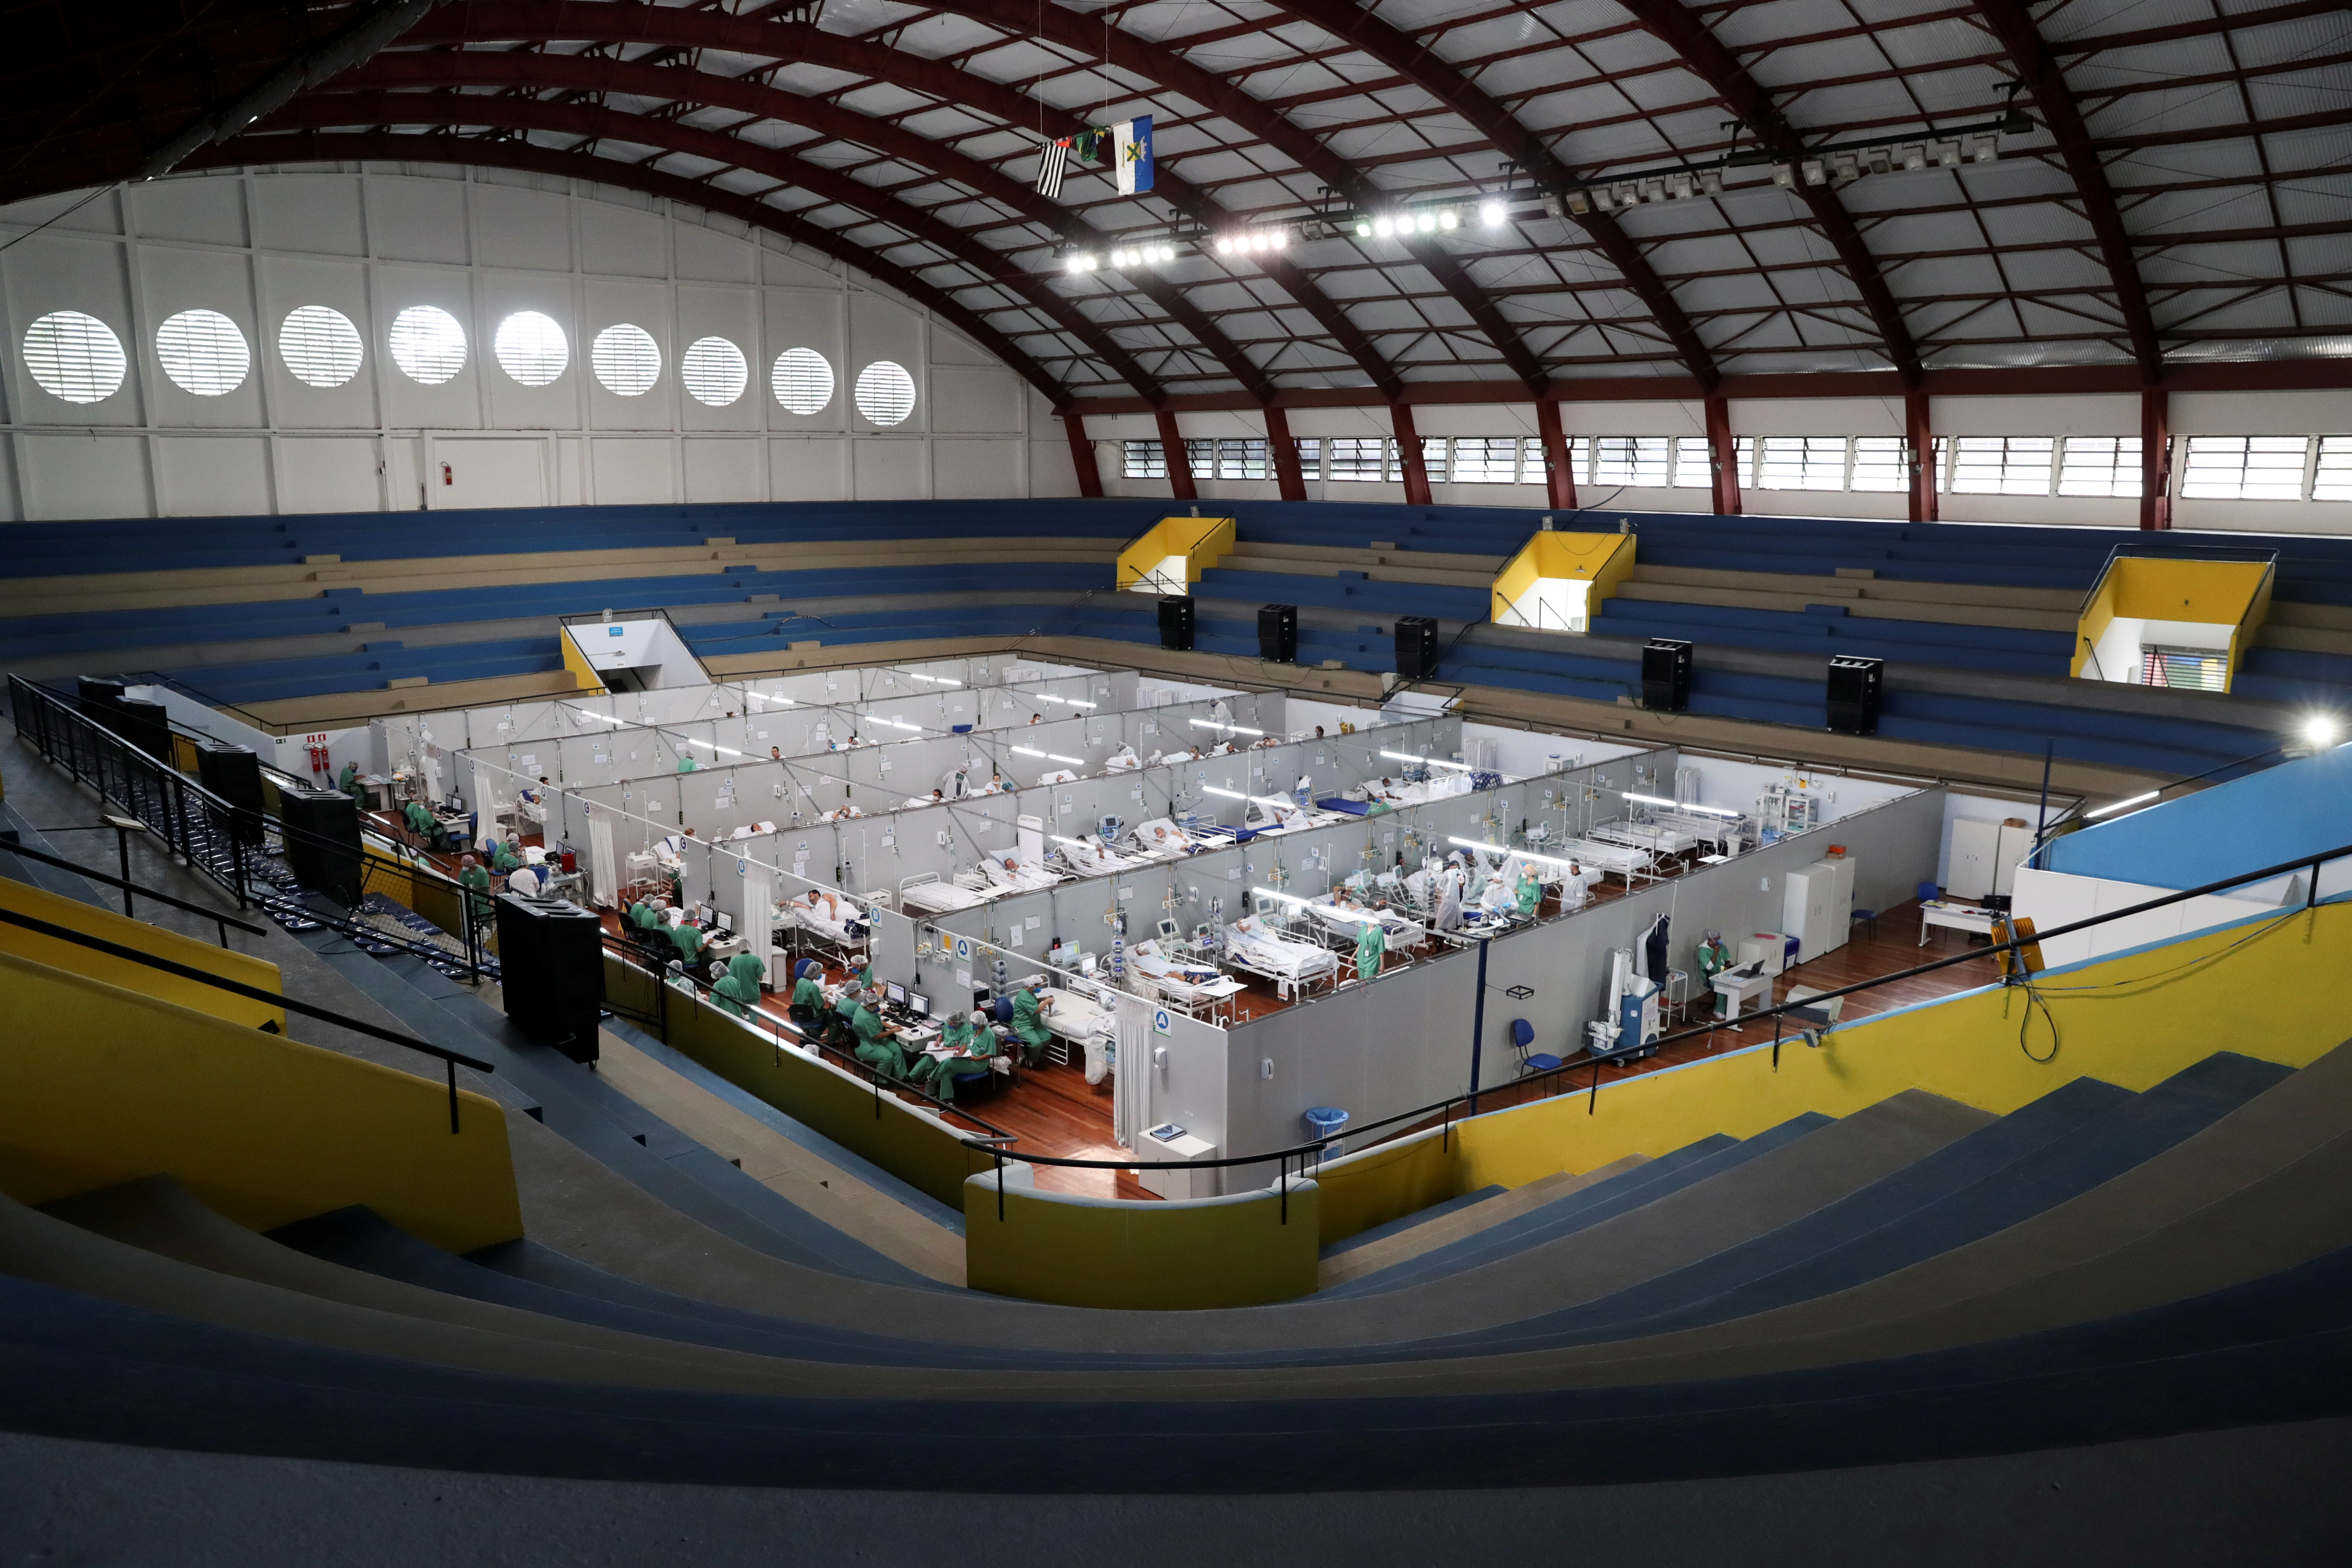 Les patients souffrant de la maladie à coronavirus (COVID-19) sont traités dans un hôpital de campagne installé au gymnase sportif Dell'Antonia à Santo Andre, à la périphérie de Sao Paulo, Brésil le 7 avril 2021. REUTERS / Amanda Perobelli